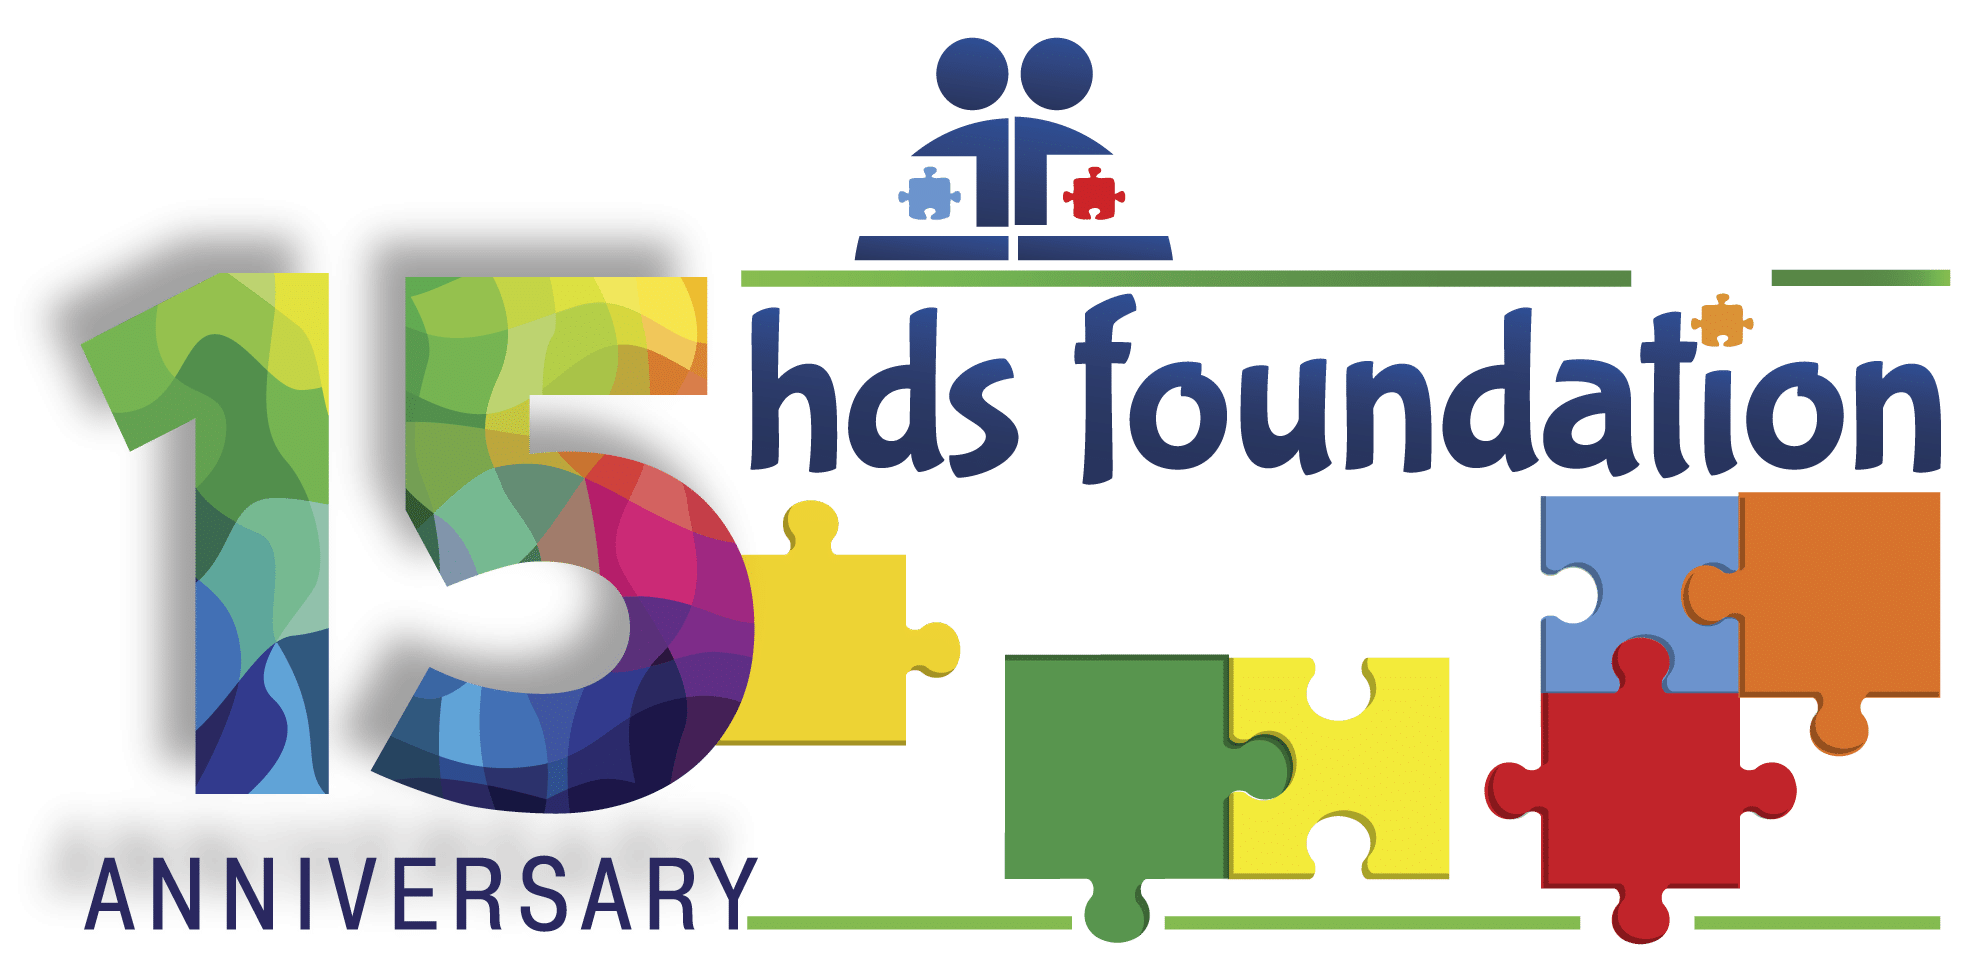 HDS Foundation